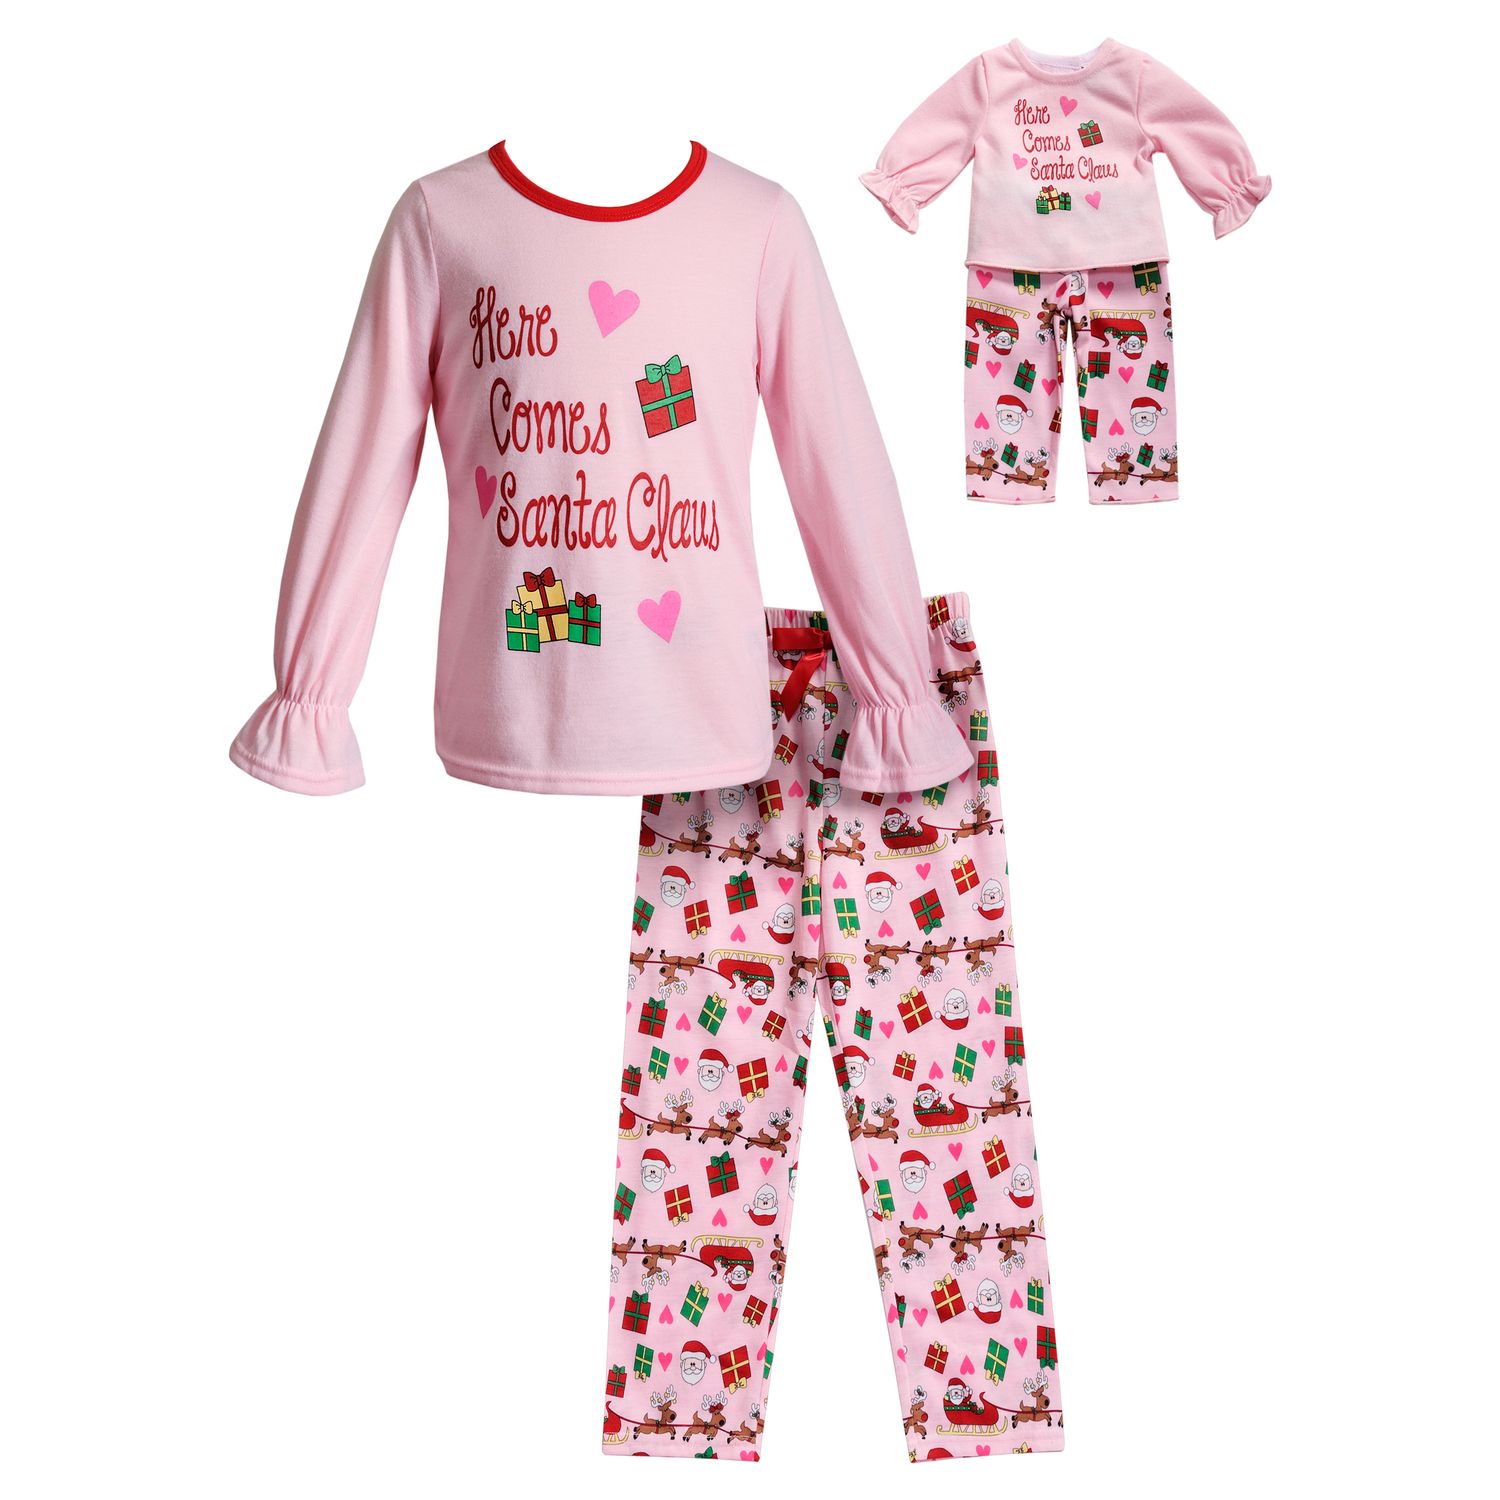 kohls girl and doll pajamas